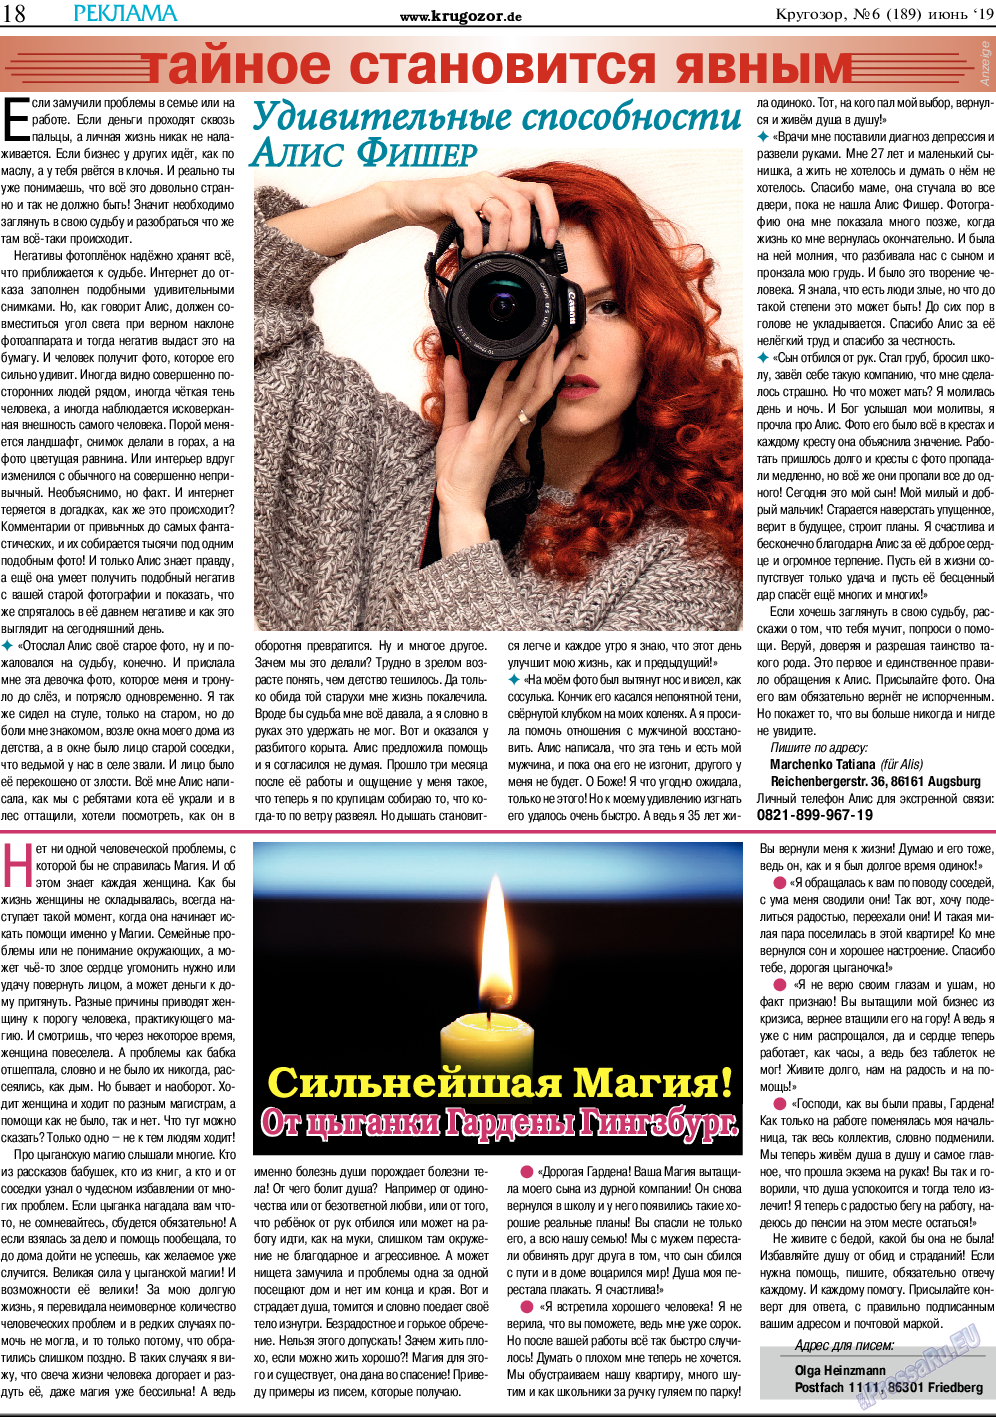 Кругозор, газета. 2019 №6 стр.18